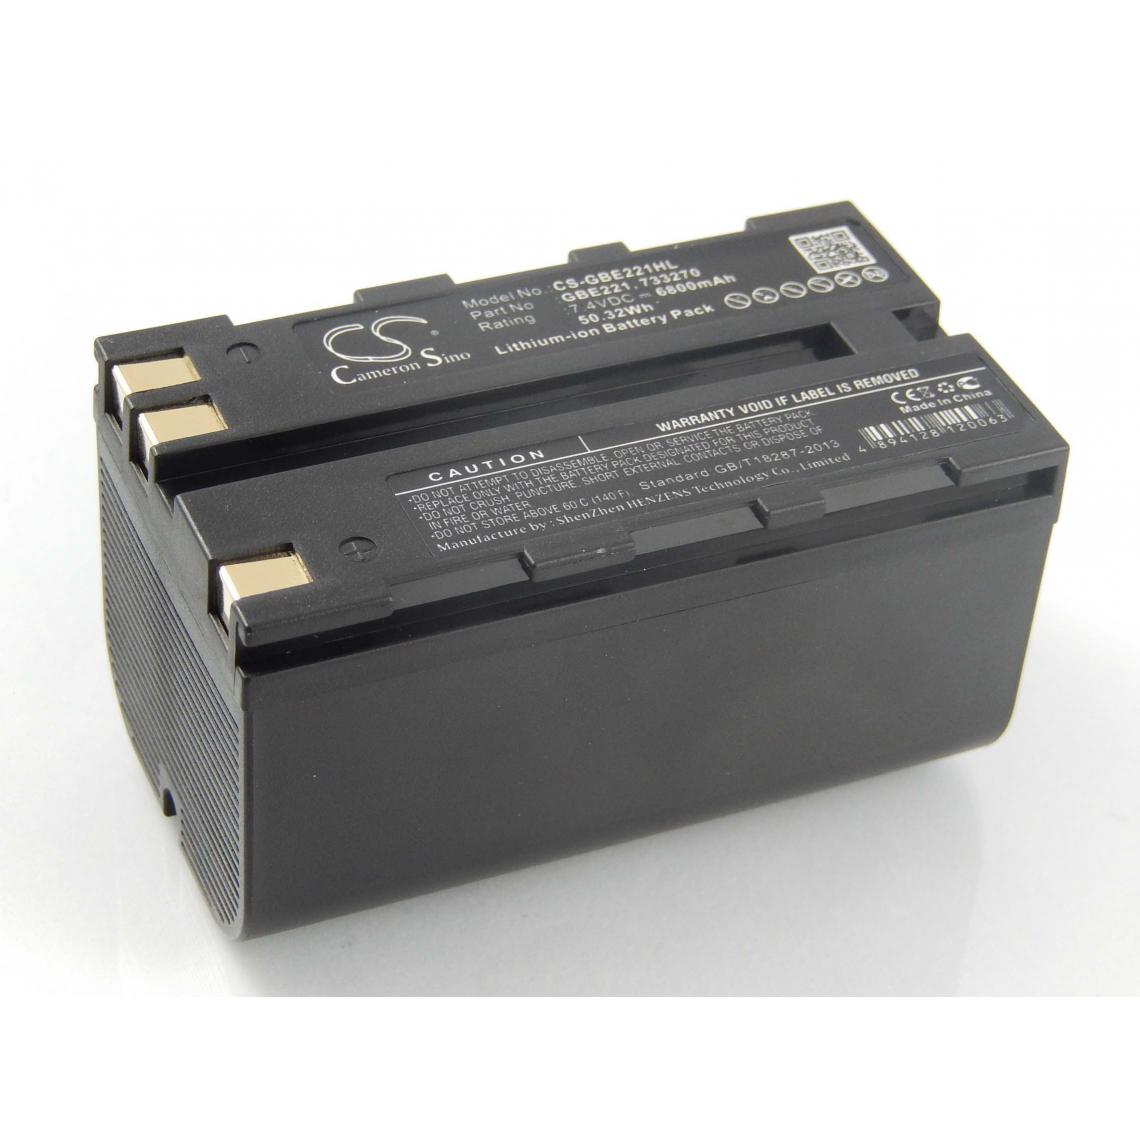 Vhbw - vhbw Batterie compatible avec Leica Viva GS08 plus NetRover dispositif de mesure laser, outil de mesure (6800mAh, 7,4V, Li-ion) - Piles rechargeables